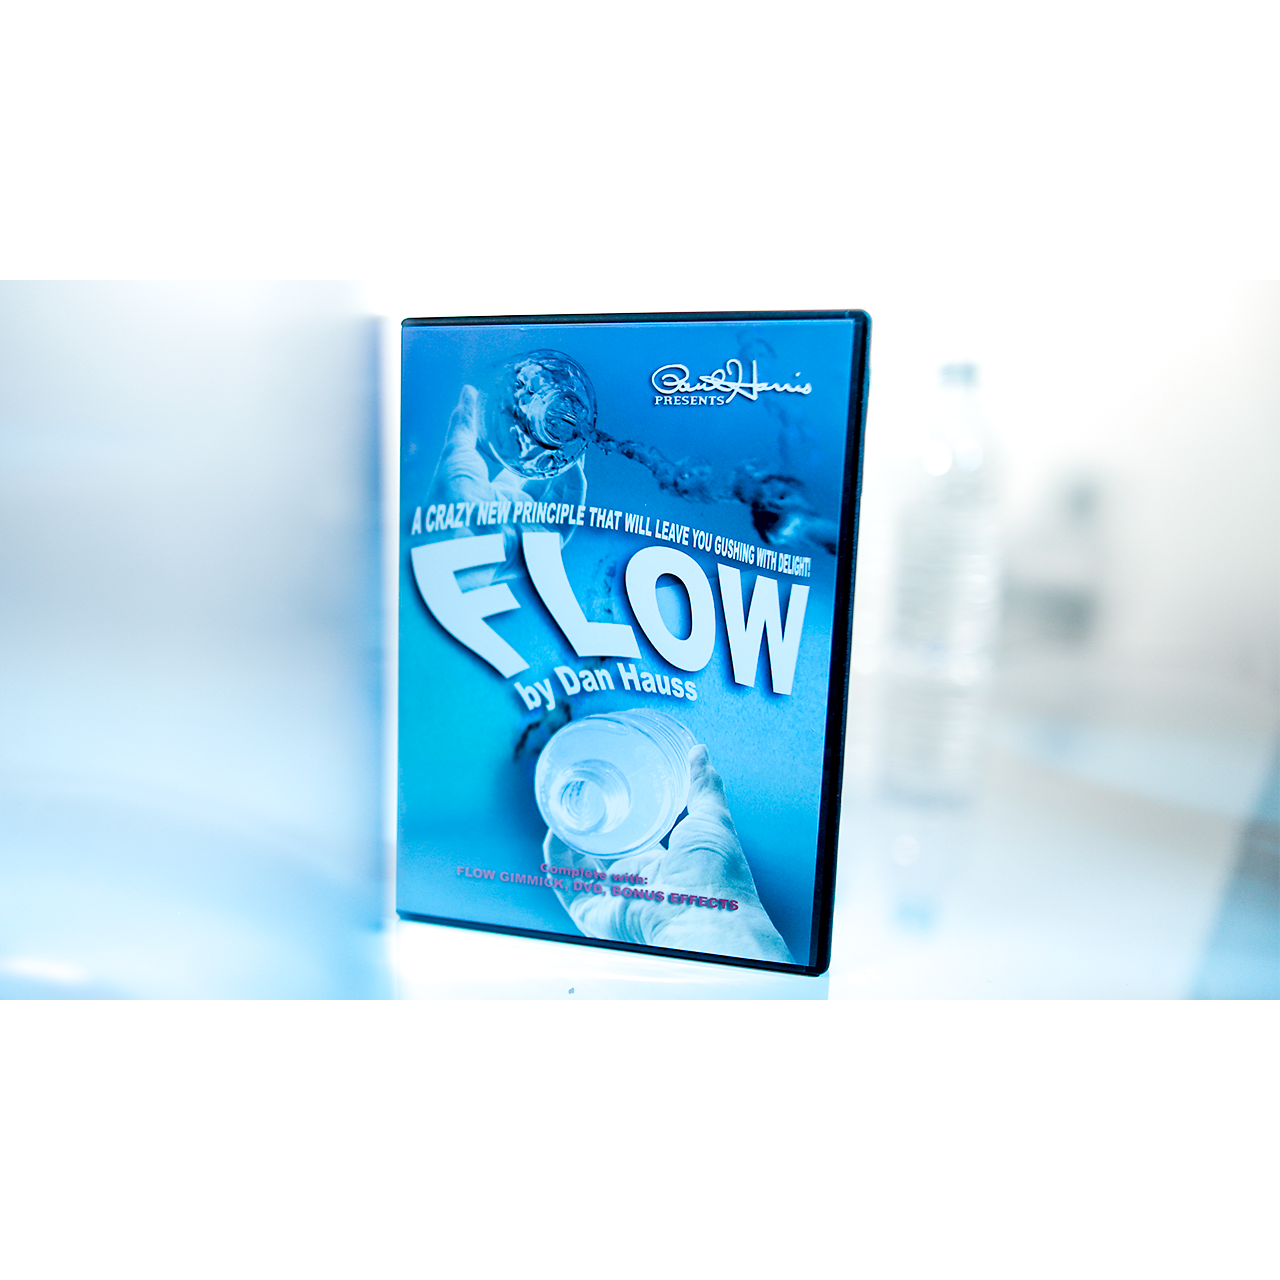 Paul Harris Presents: Flow by Dan Hauss DVD